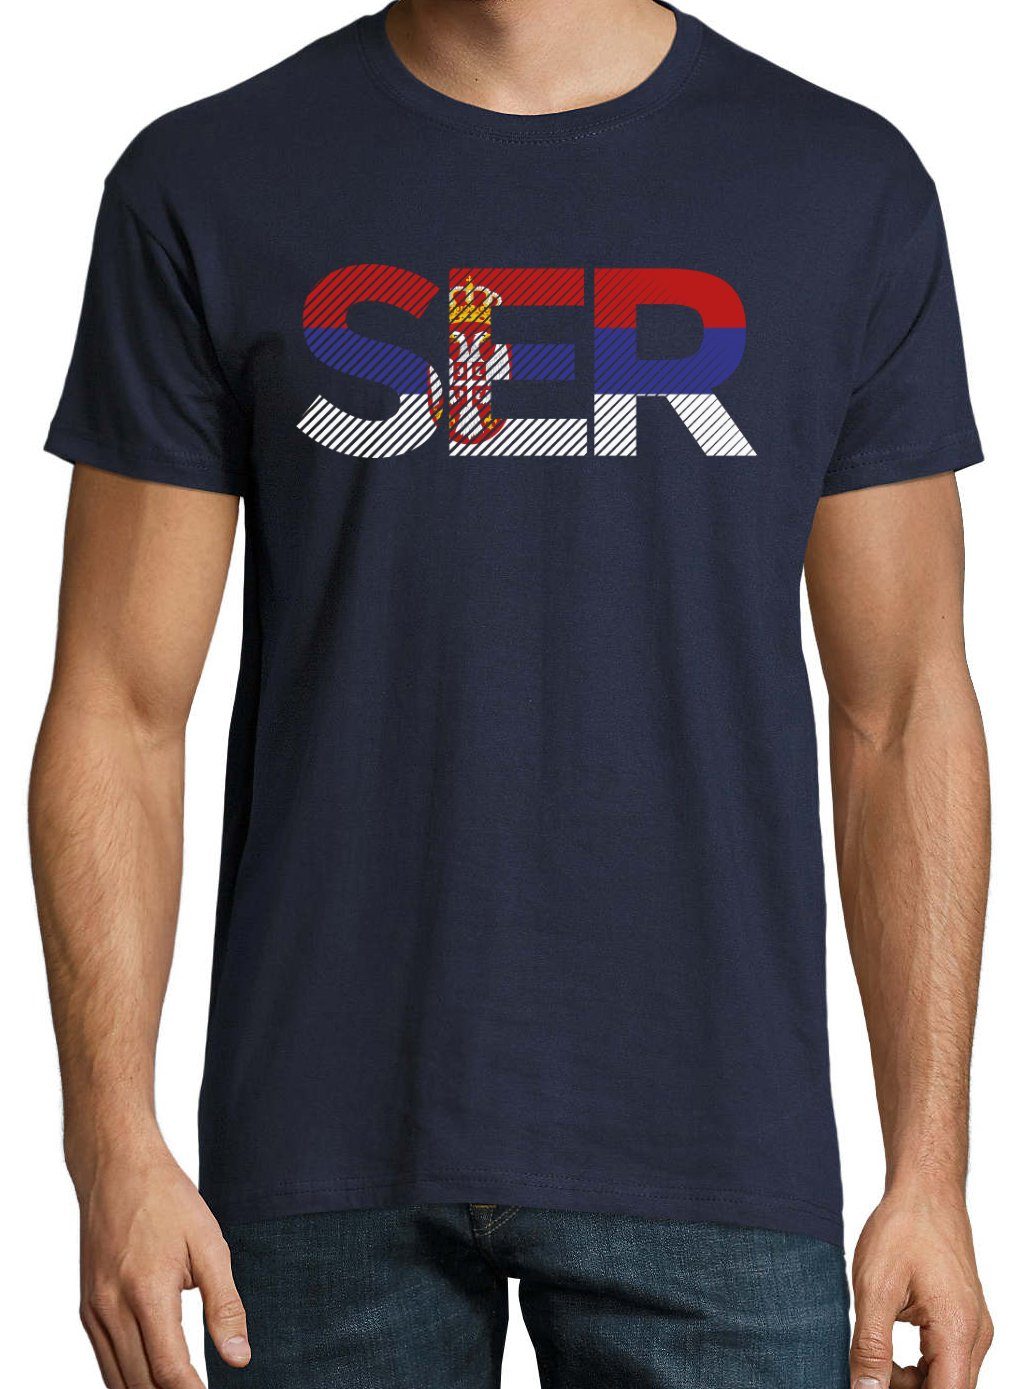 im Look Fußball T-Shirt Frontprint T-Shirt Designz Herren mit Navy SER Youth Serbien